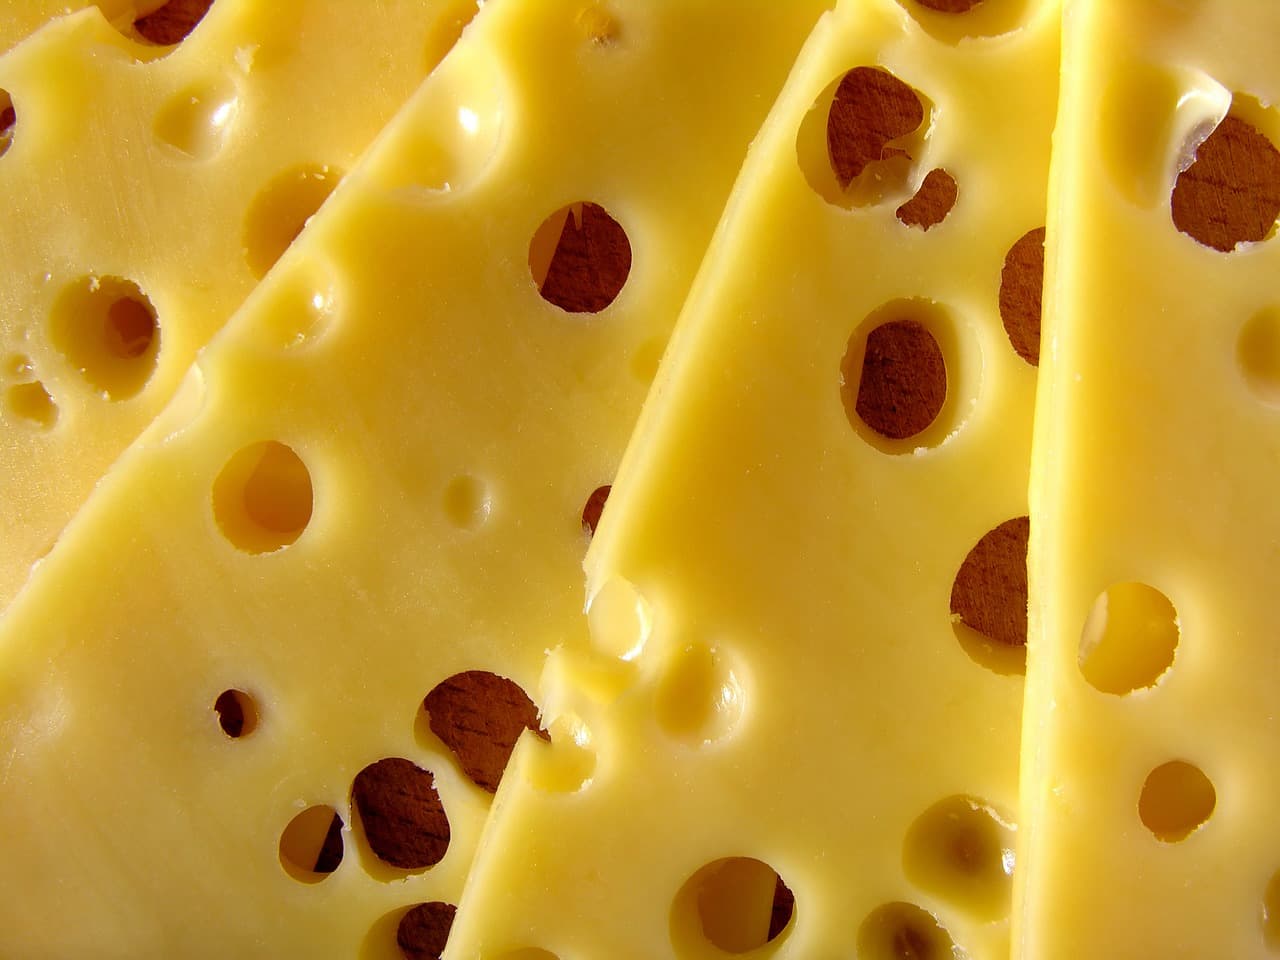 Ha járt az Auchanban és vásárolt ebből a sajtból, ne egye meg!